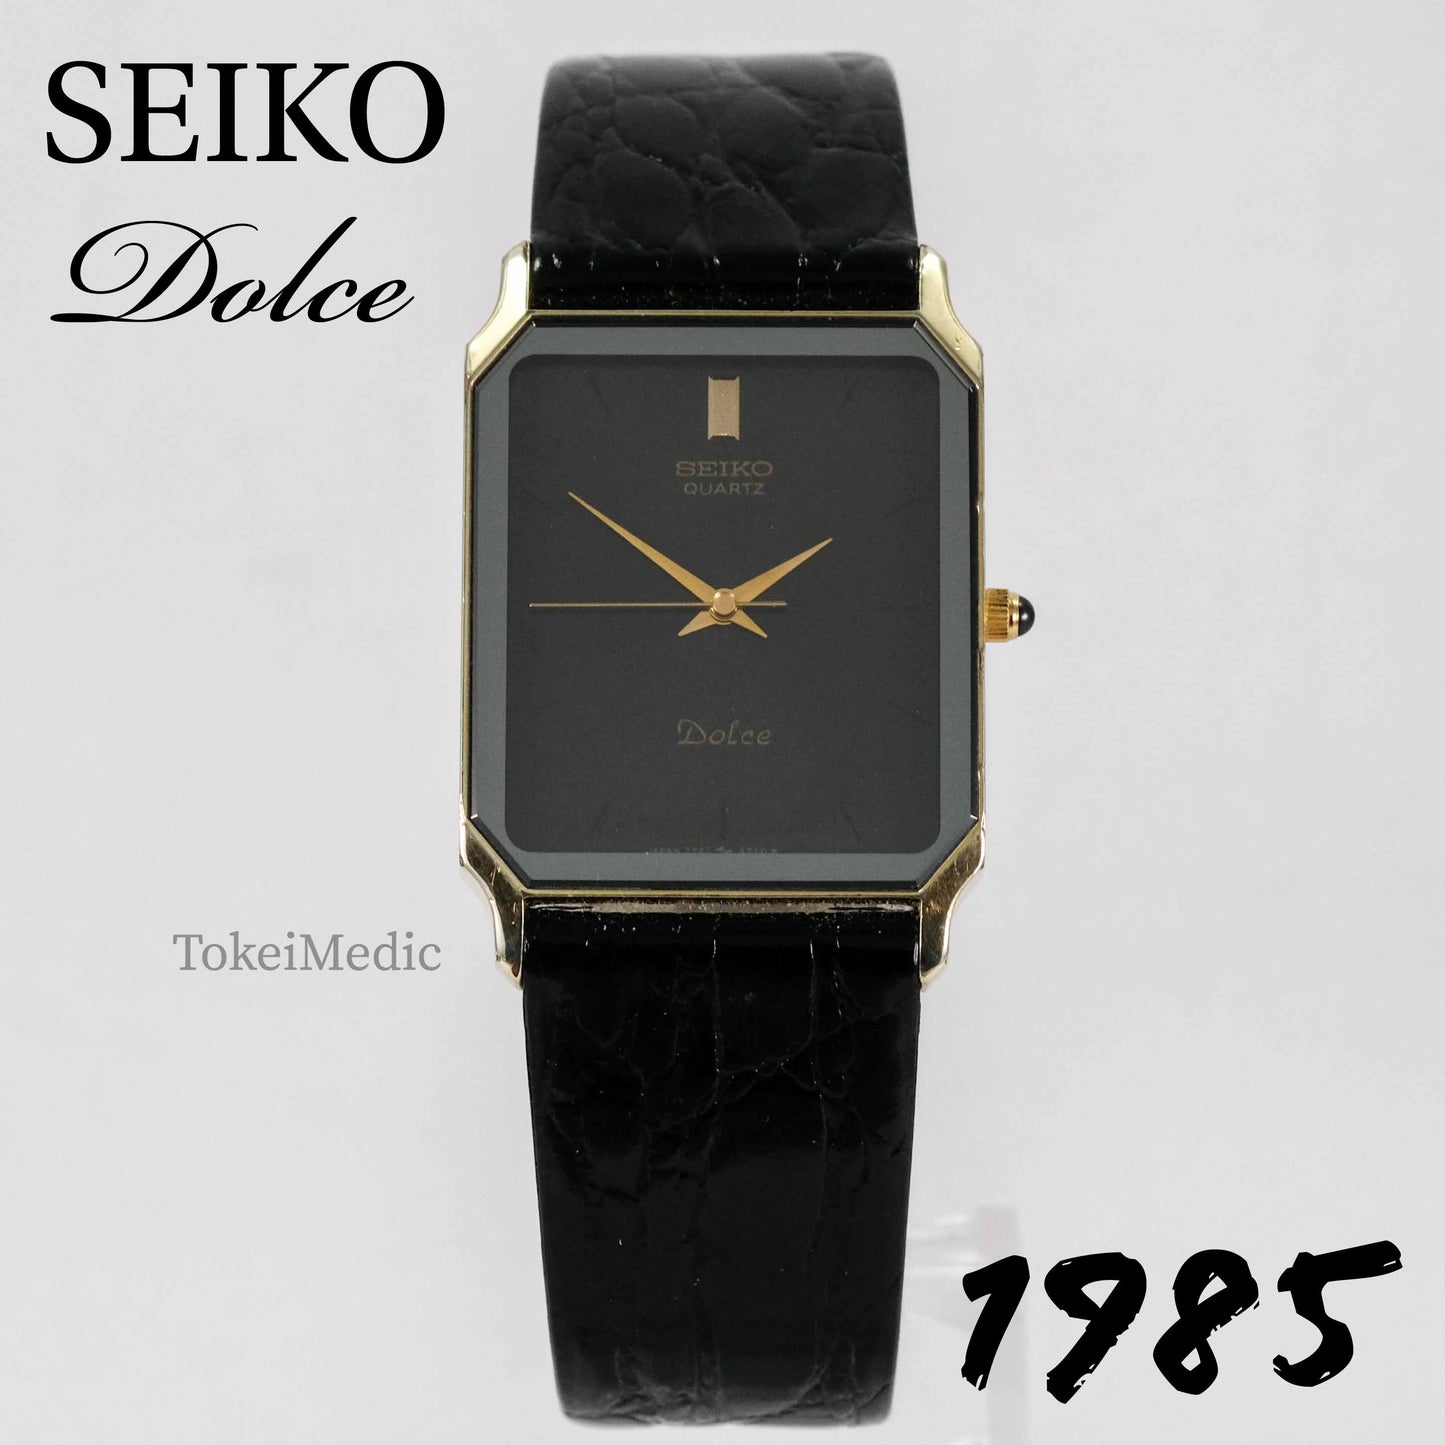 1985 Seiko Dolce 7731-5220